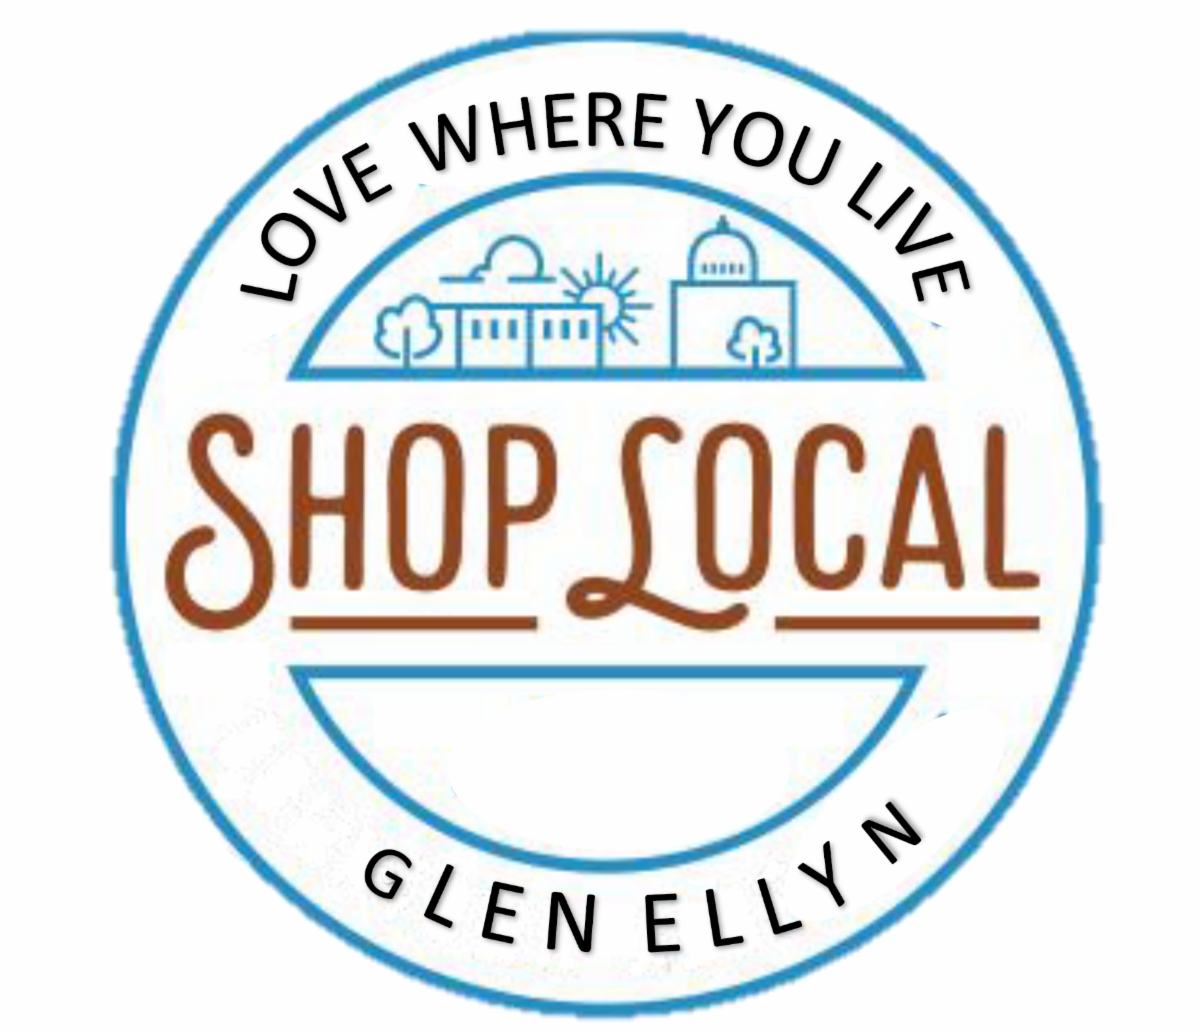 shop local glen ellyn (1)